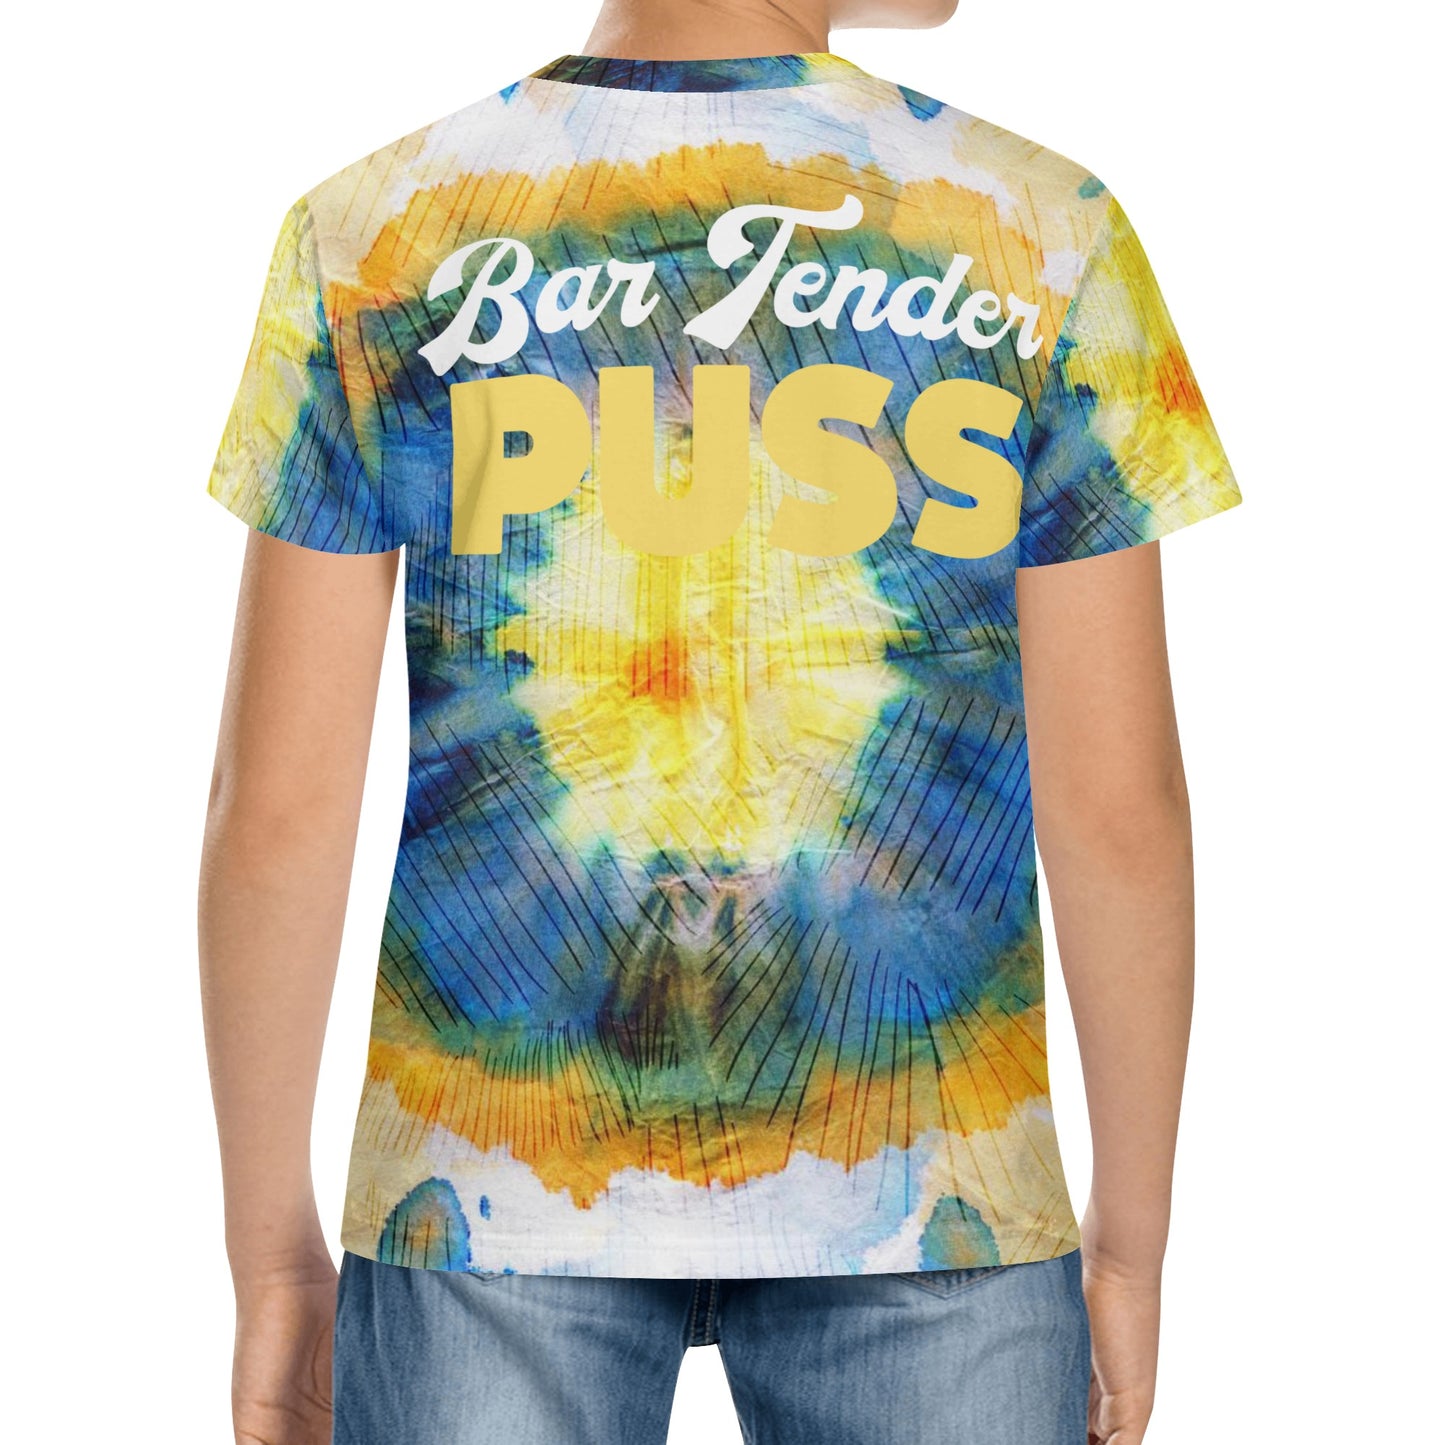 Bar Tender Puss Kids All Over Print Short Sleeve T-Shirt